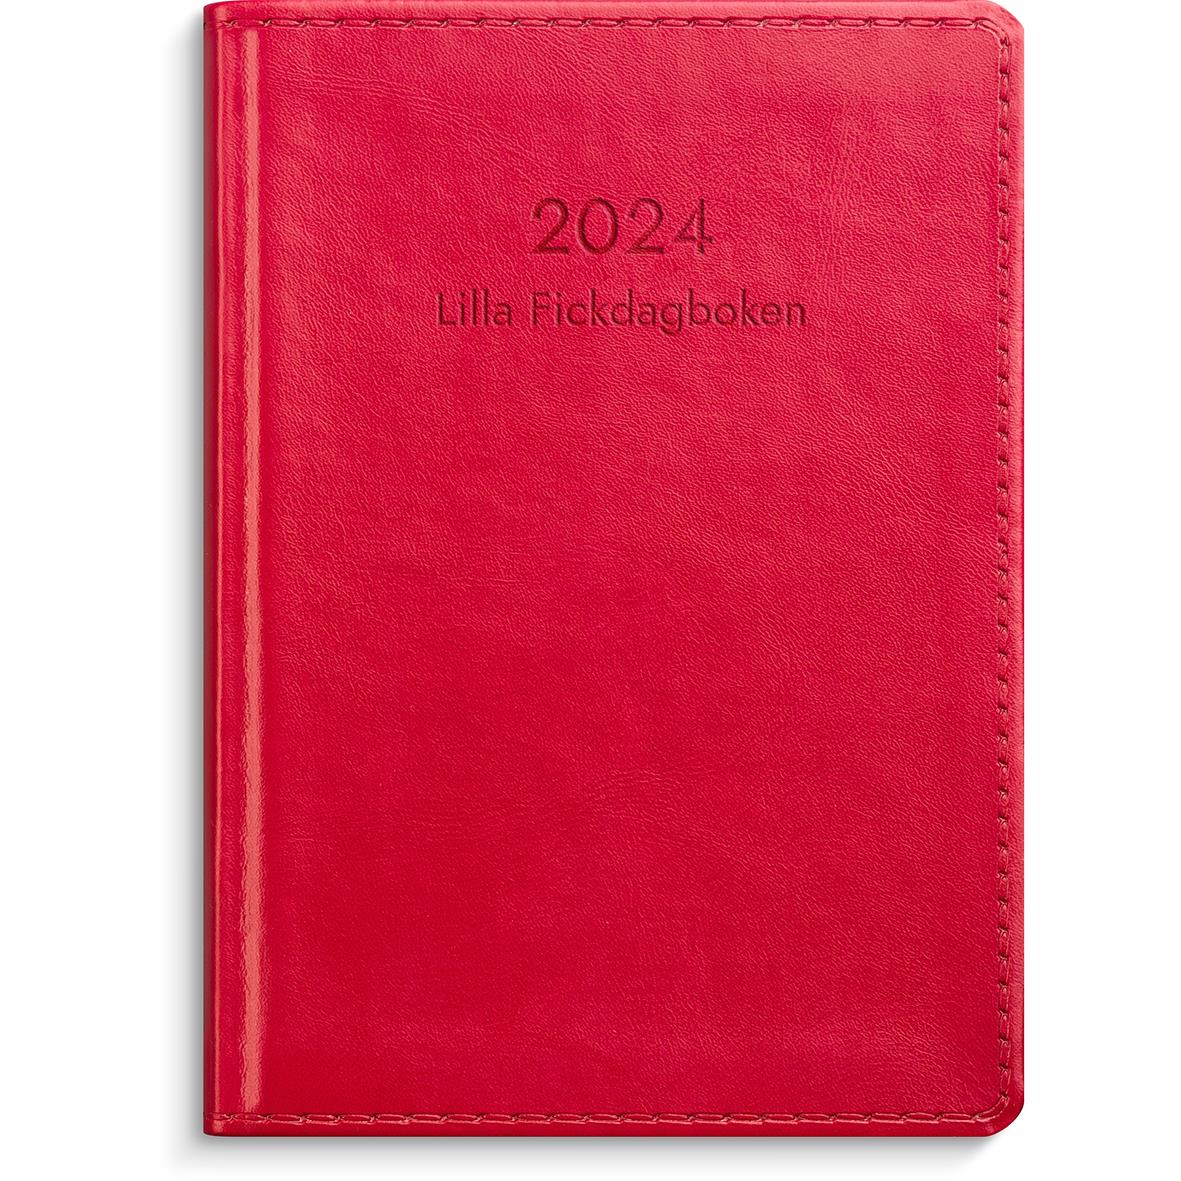 Almanacka Burde 3257 Lilla Fickdagboken Konstläder 2024 Röd